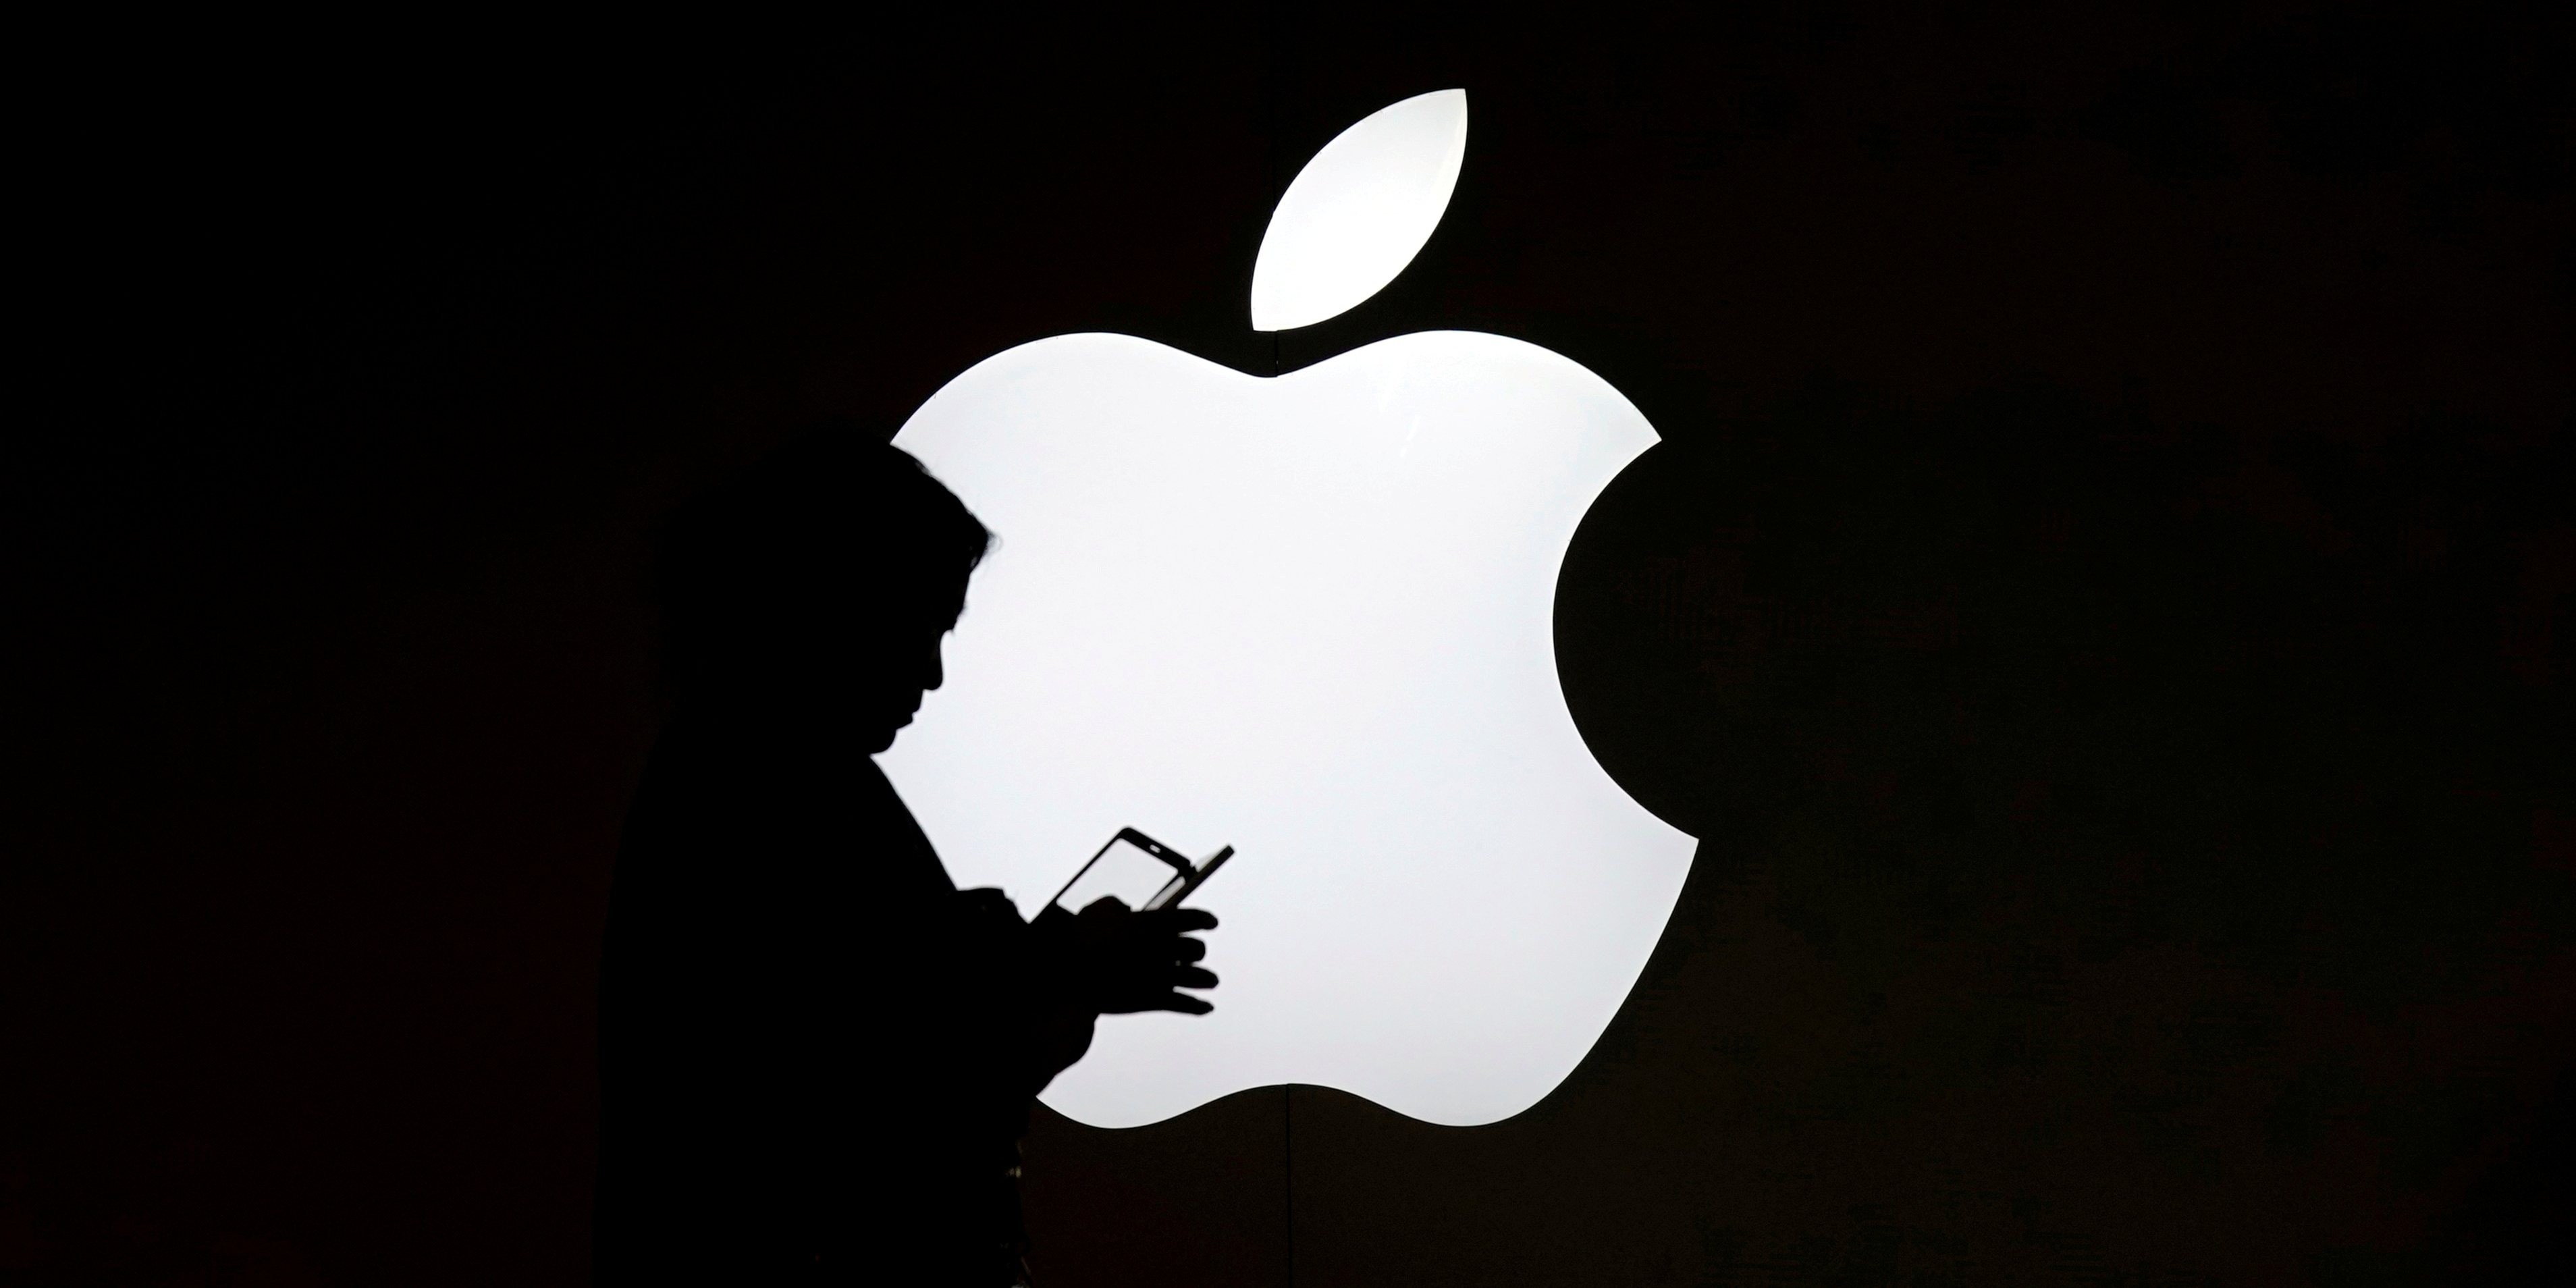 La Chine menace Apple de boycott, en riposte aux sanctions américaines